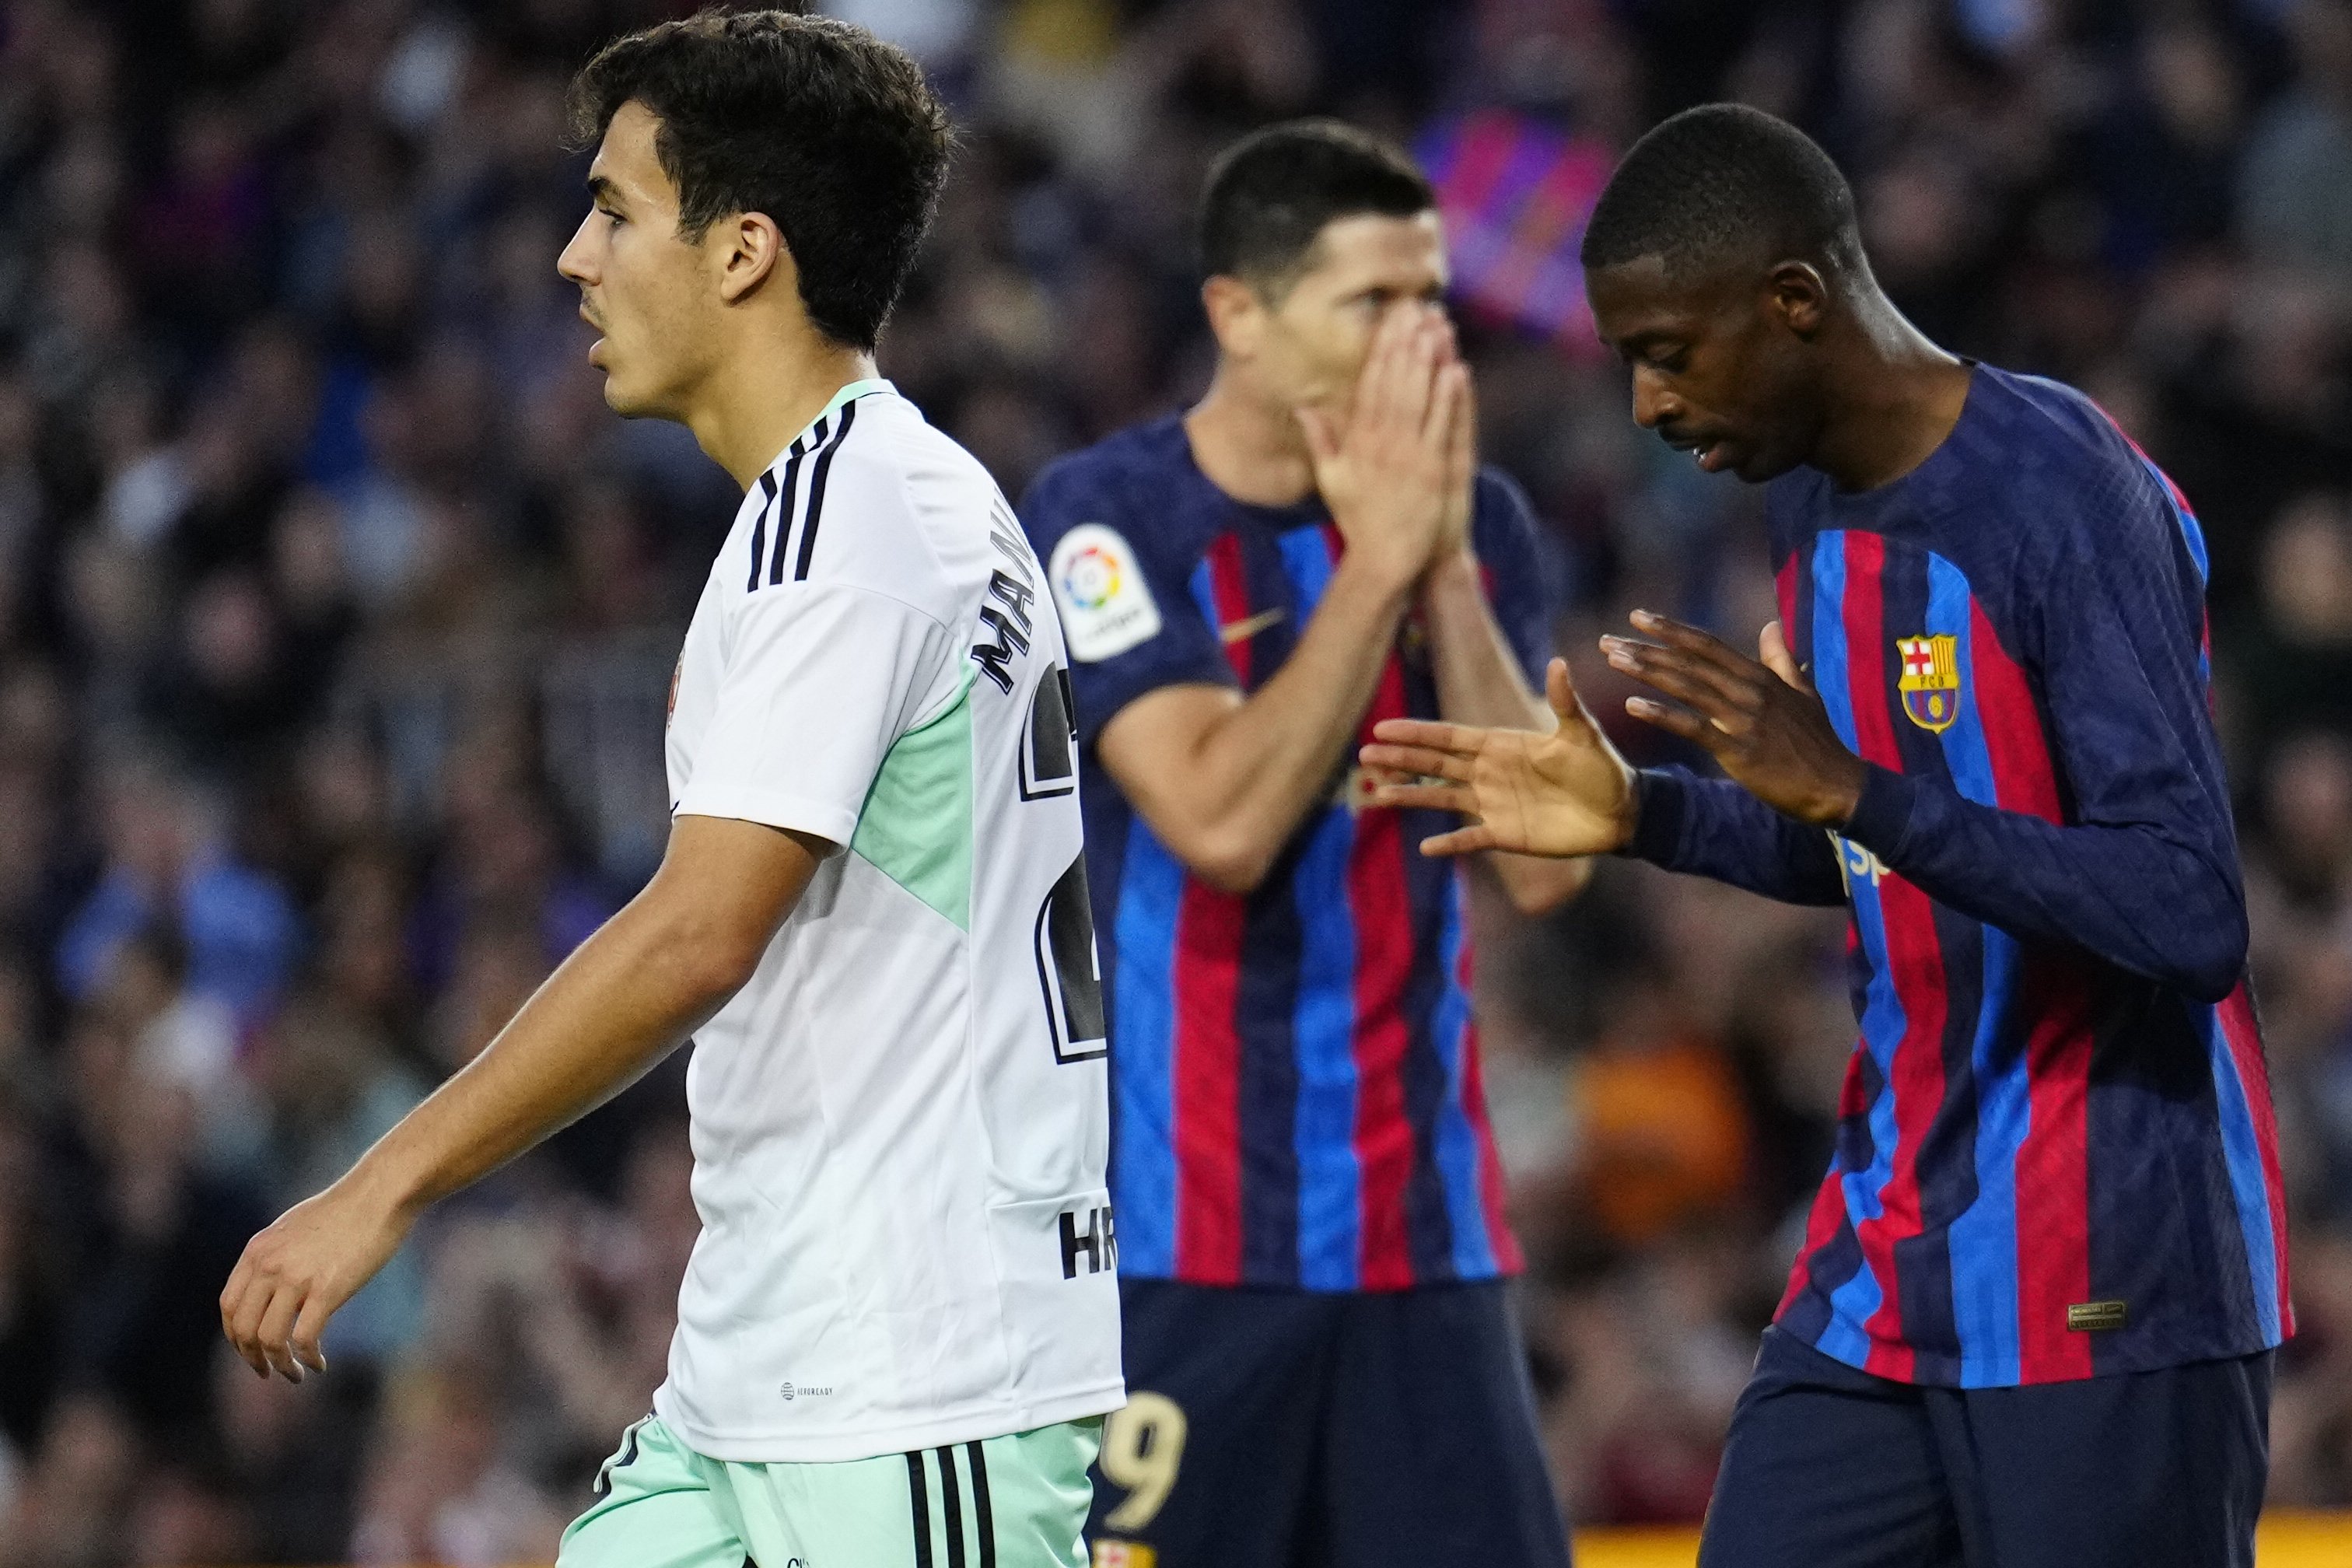 Dembélé vuelve a negociar con el enemigo 1 año después, 50 millones y adiós Barça